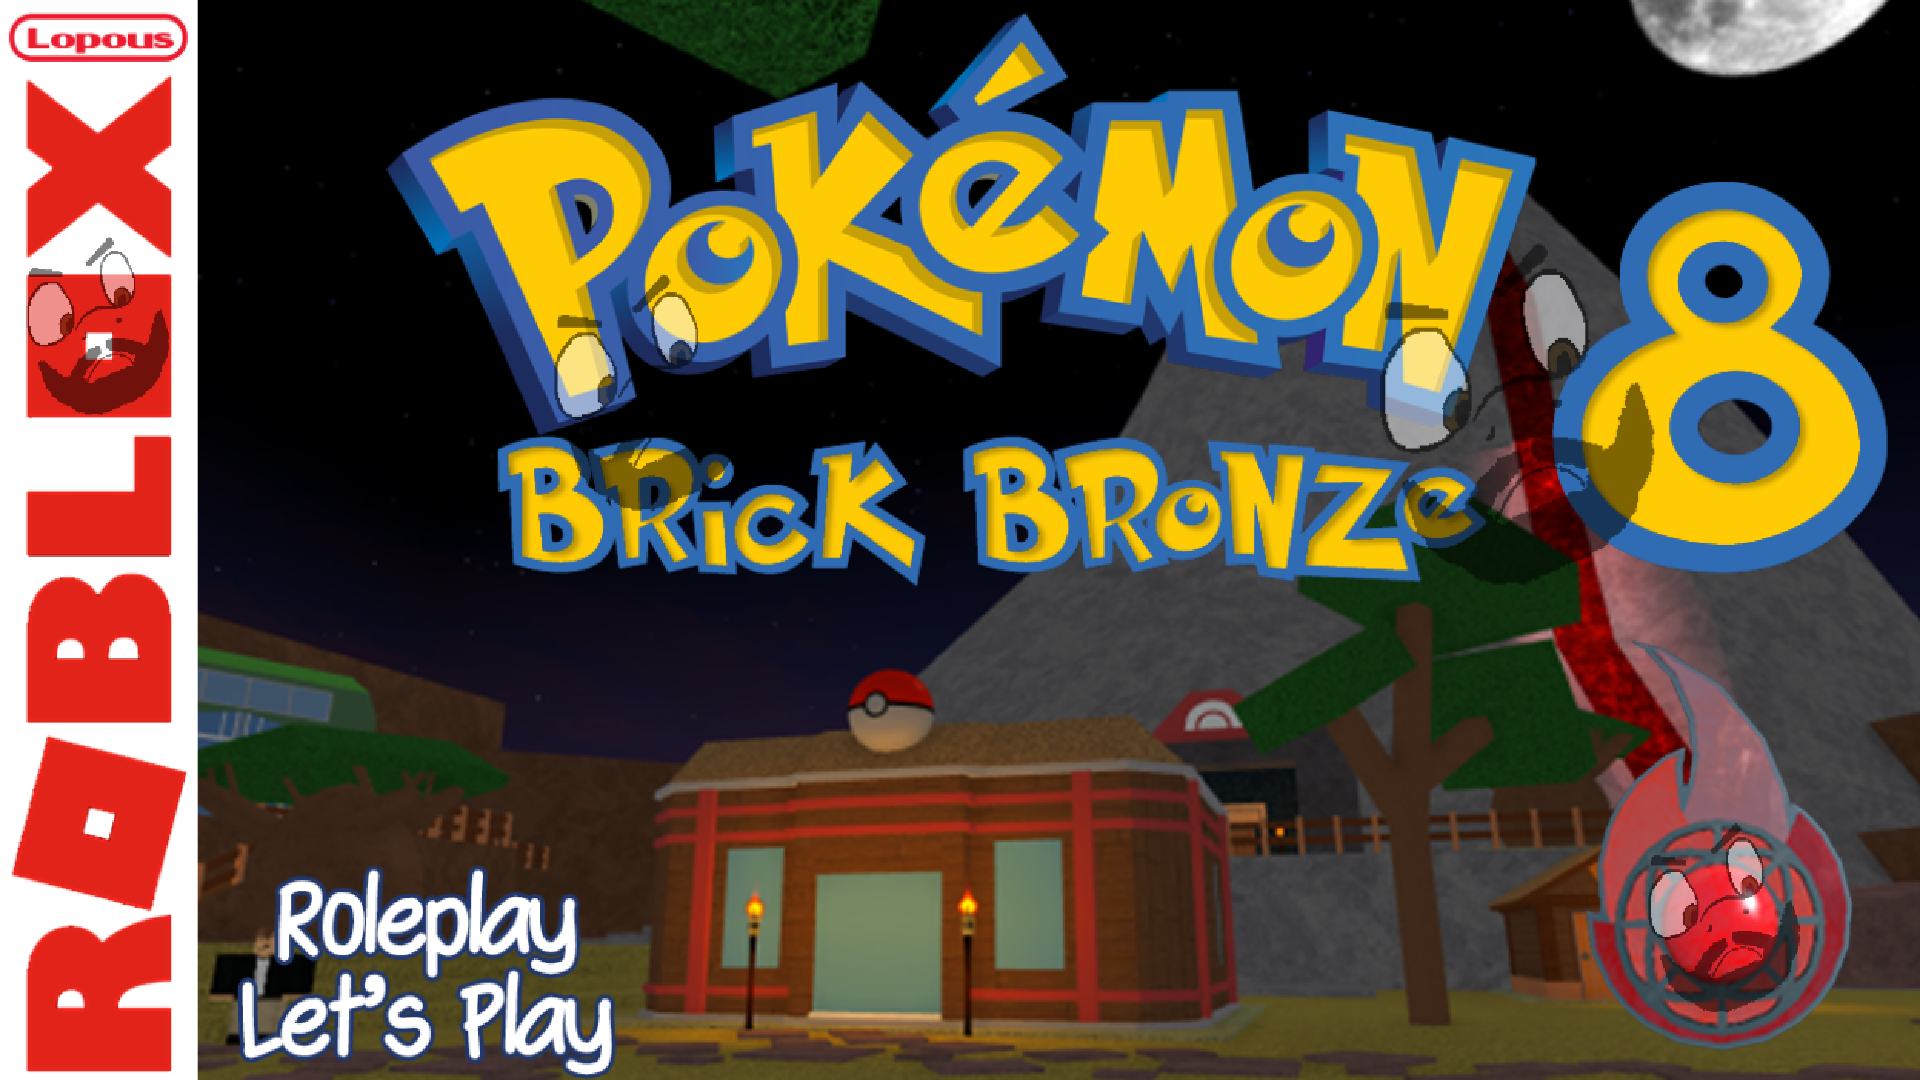 My Team in a Roblox Pokemon Brick Bronze Remake